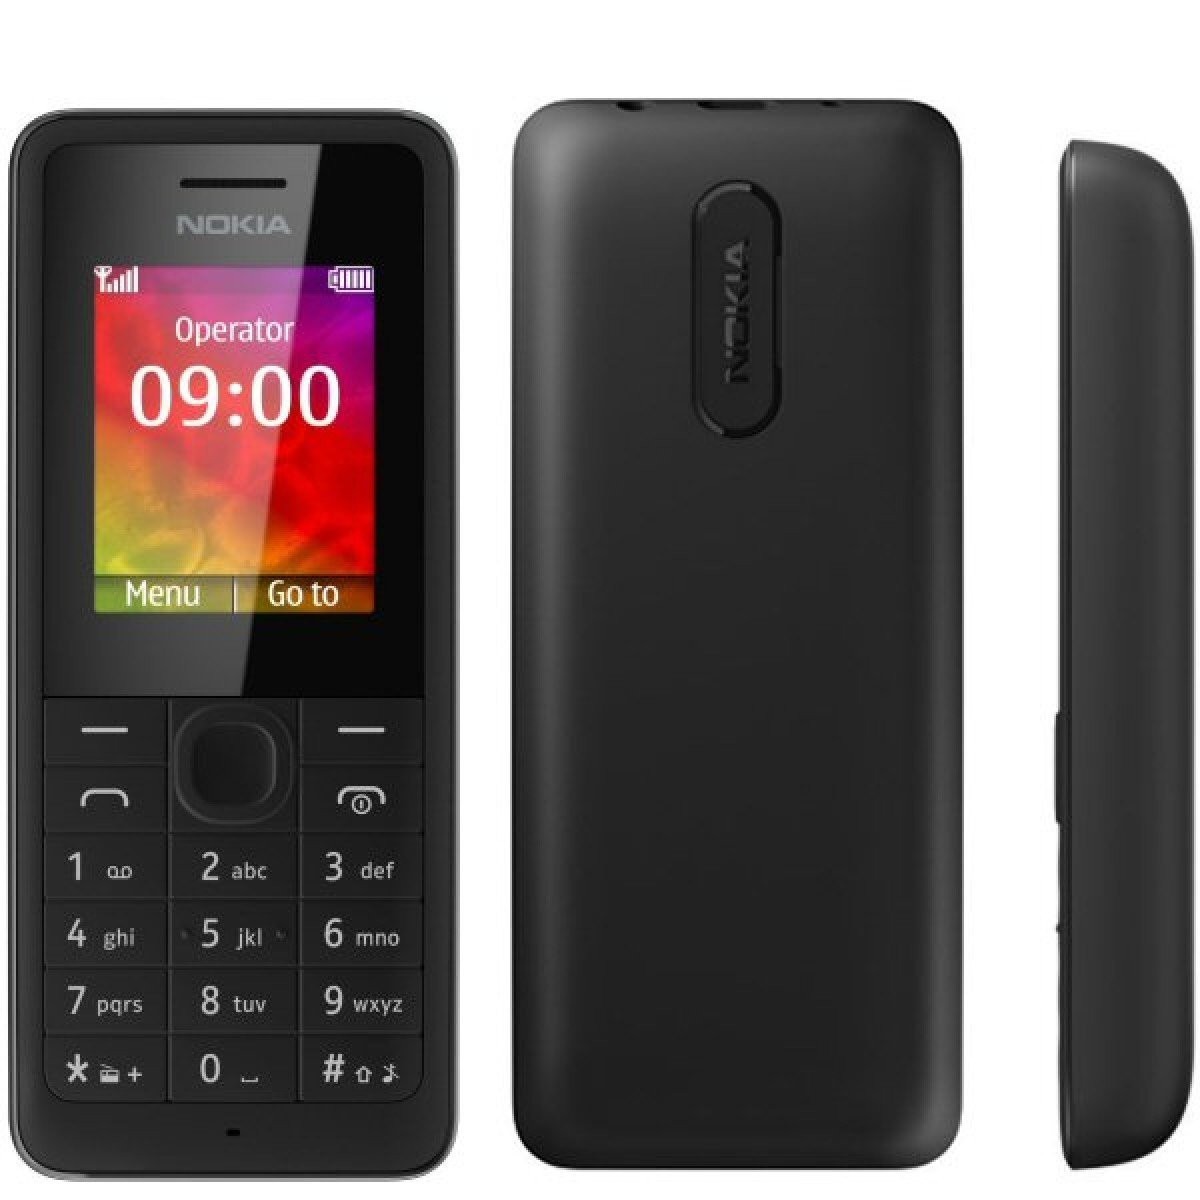 Nokia 106 được trang bị viên pin 800 mAh